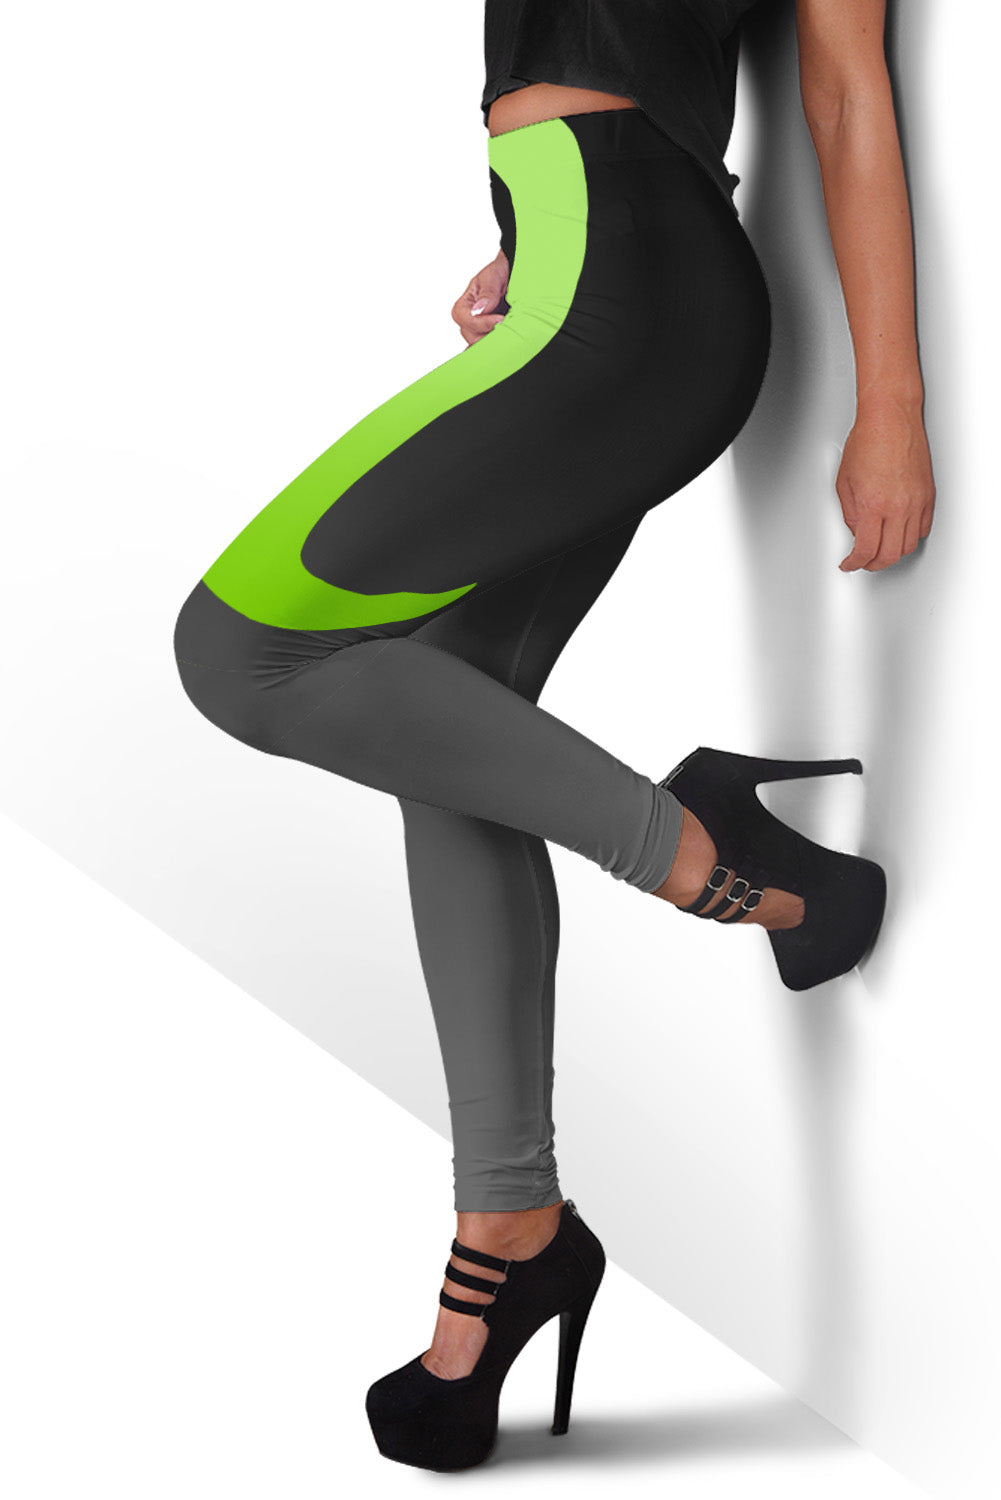 Rena Design Emerald Leggings - Leggings - buy epic deals